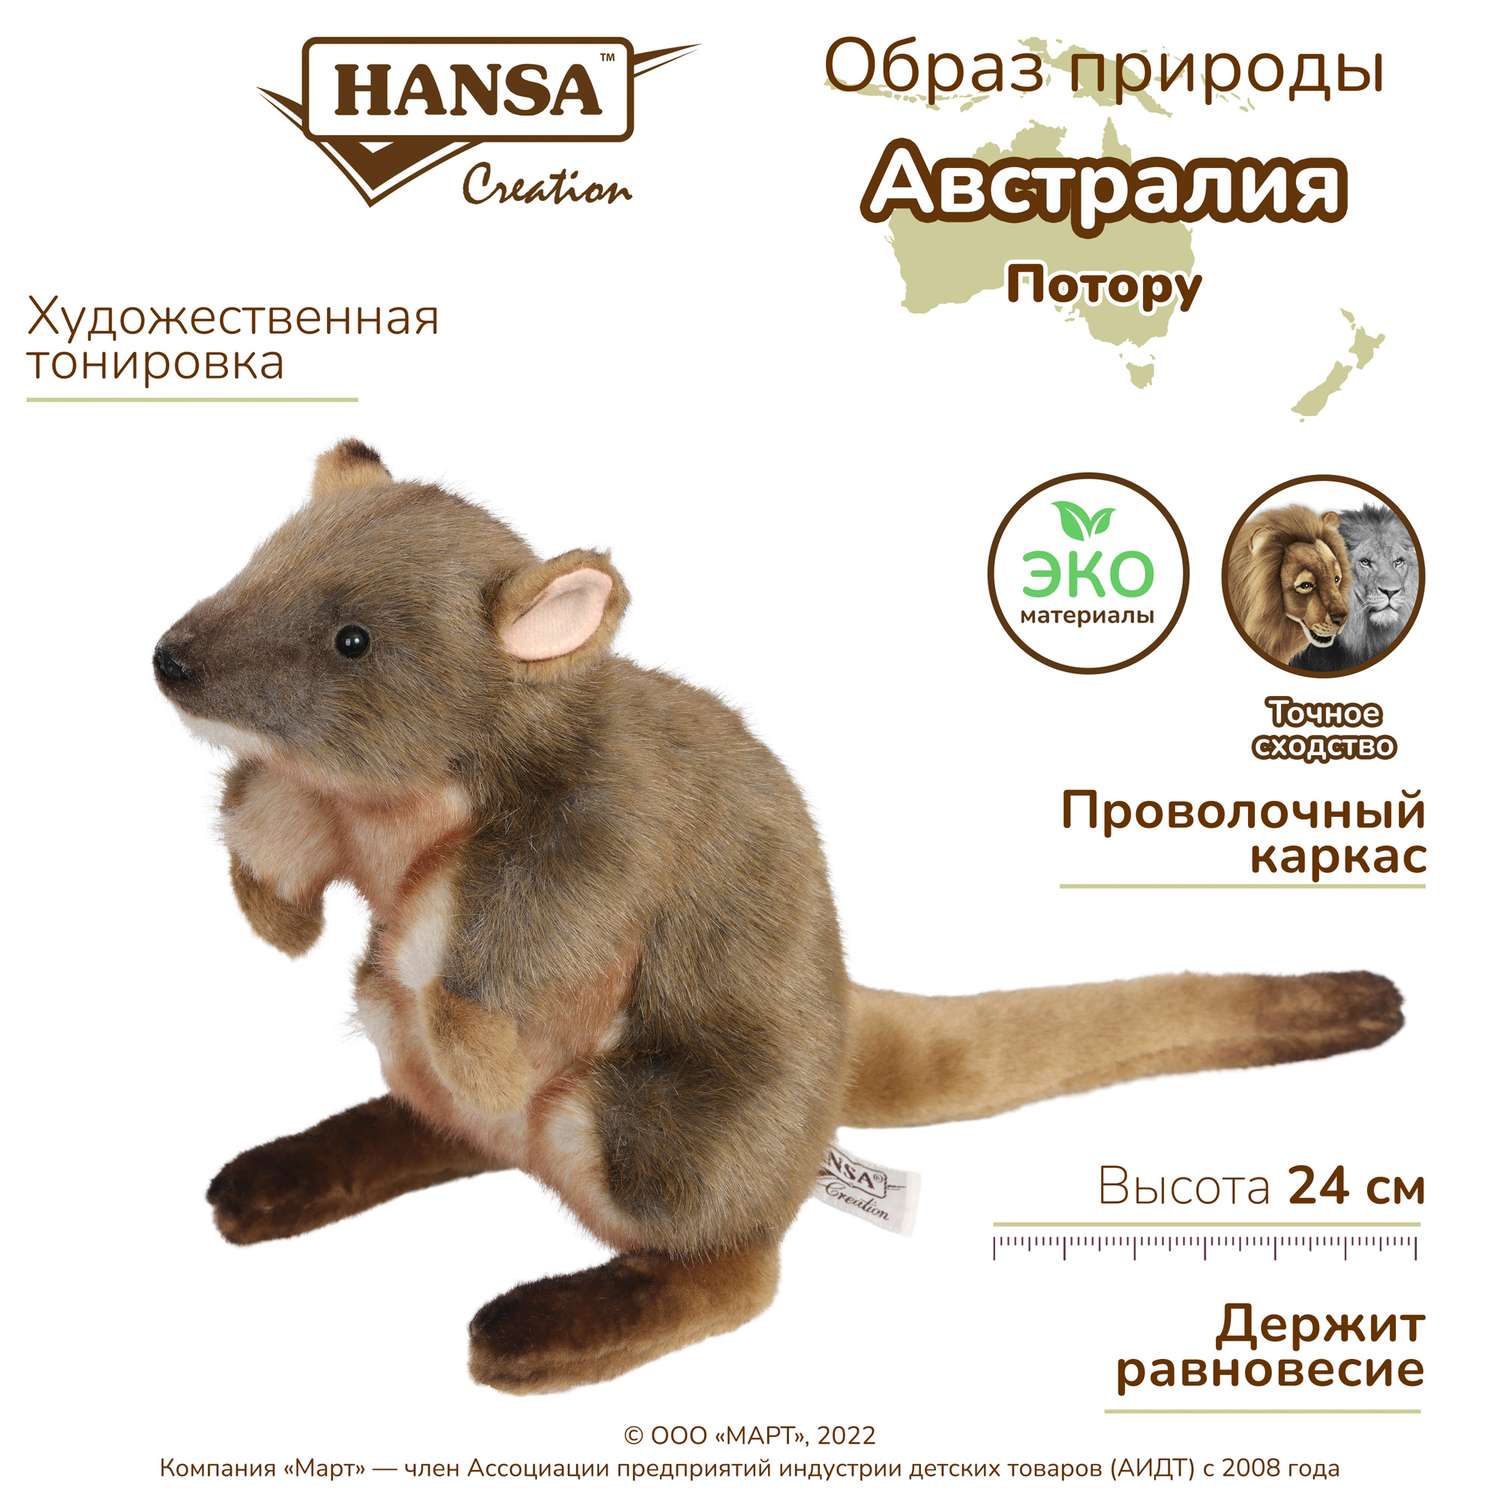 Реалистичная мягкая игрушка HANSA Крыса потору 24 см - фото 2